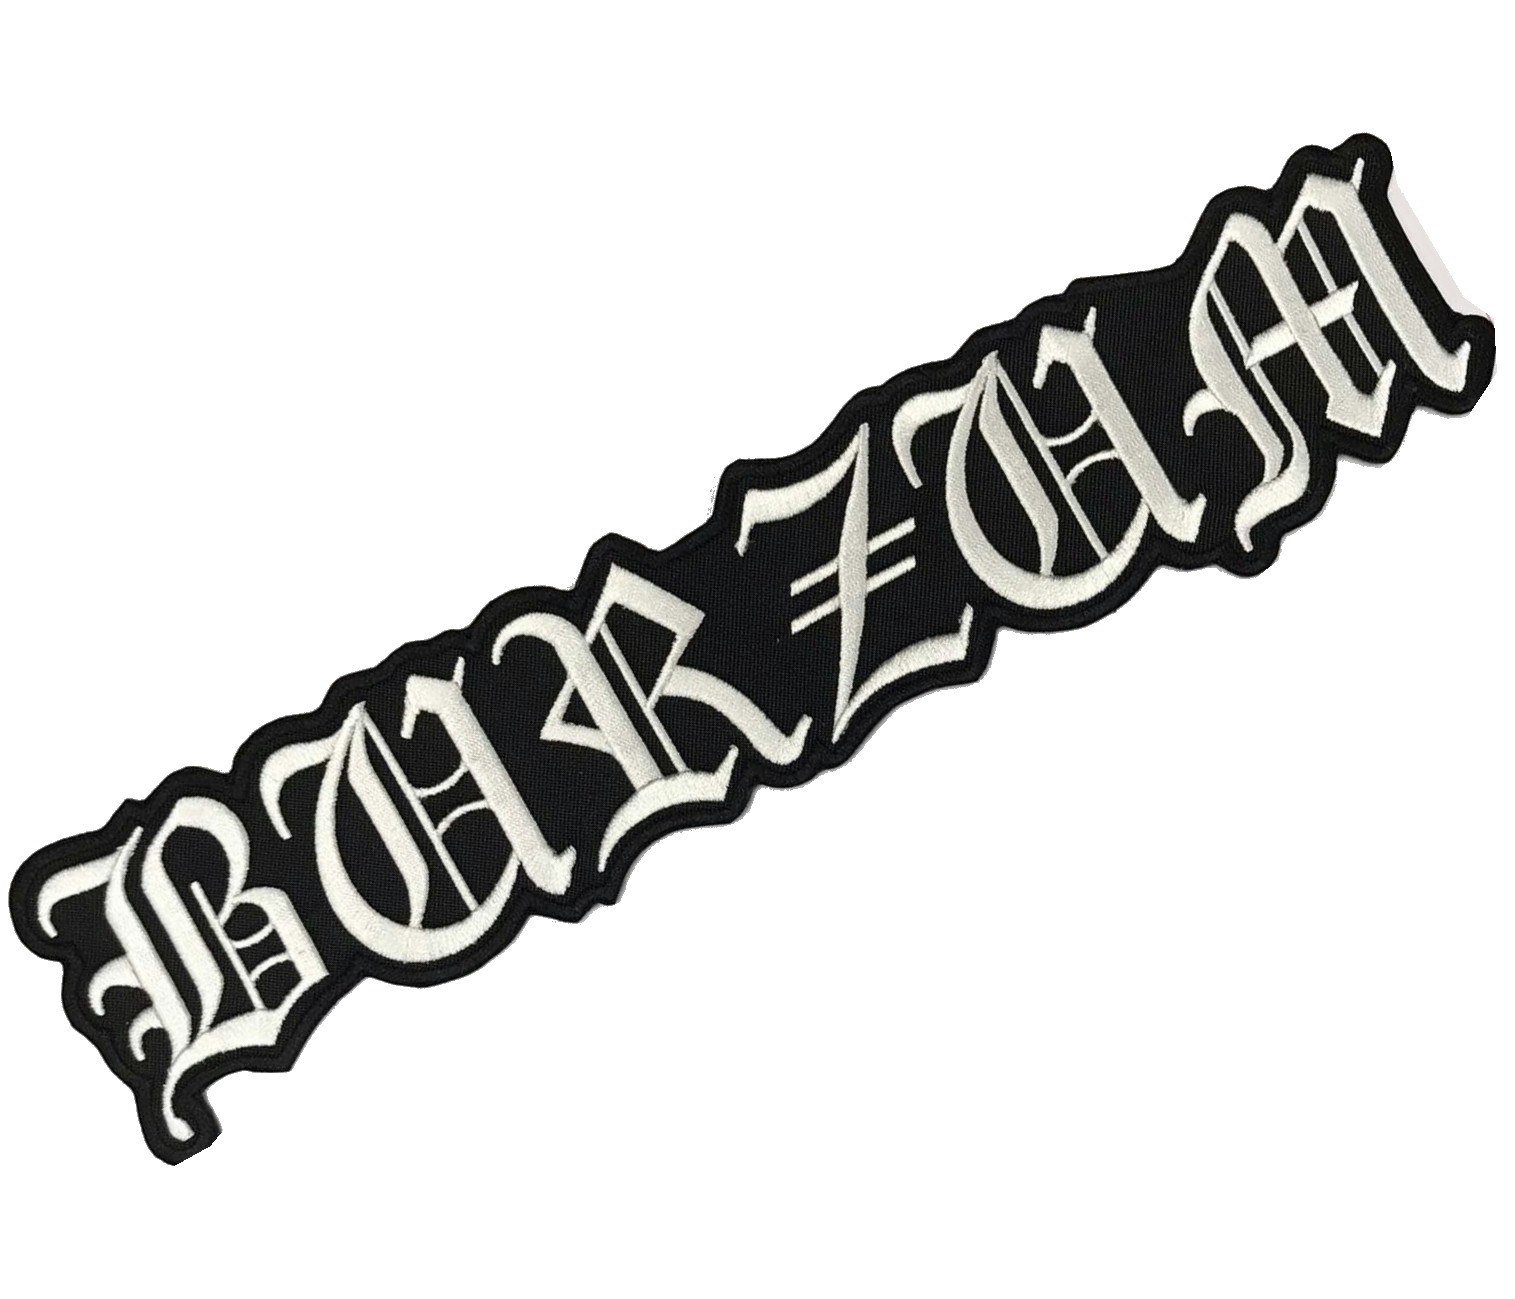 BURZUM logo XL